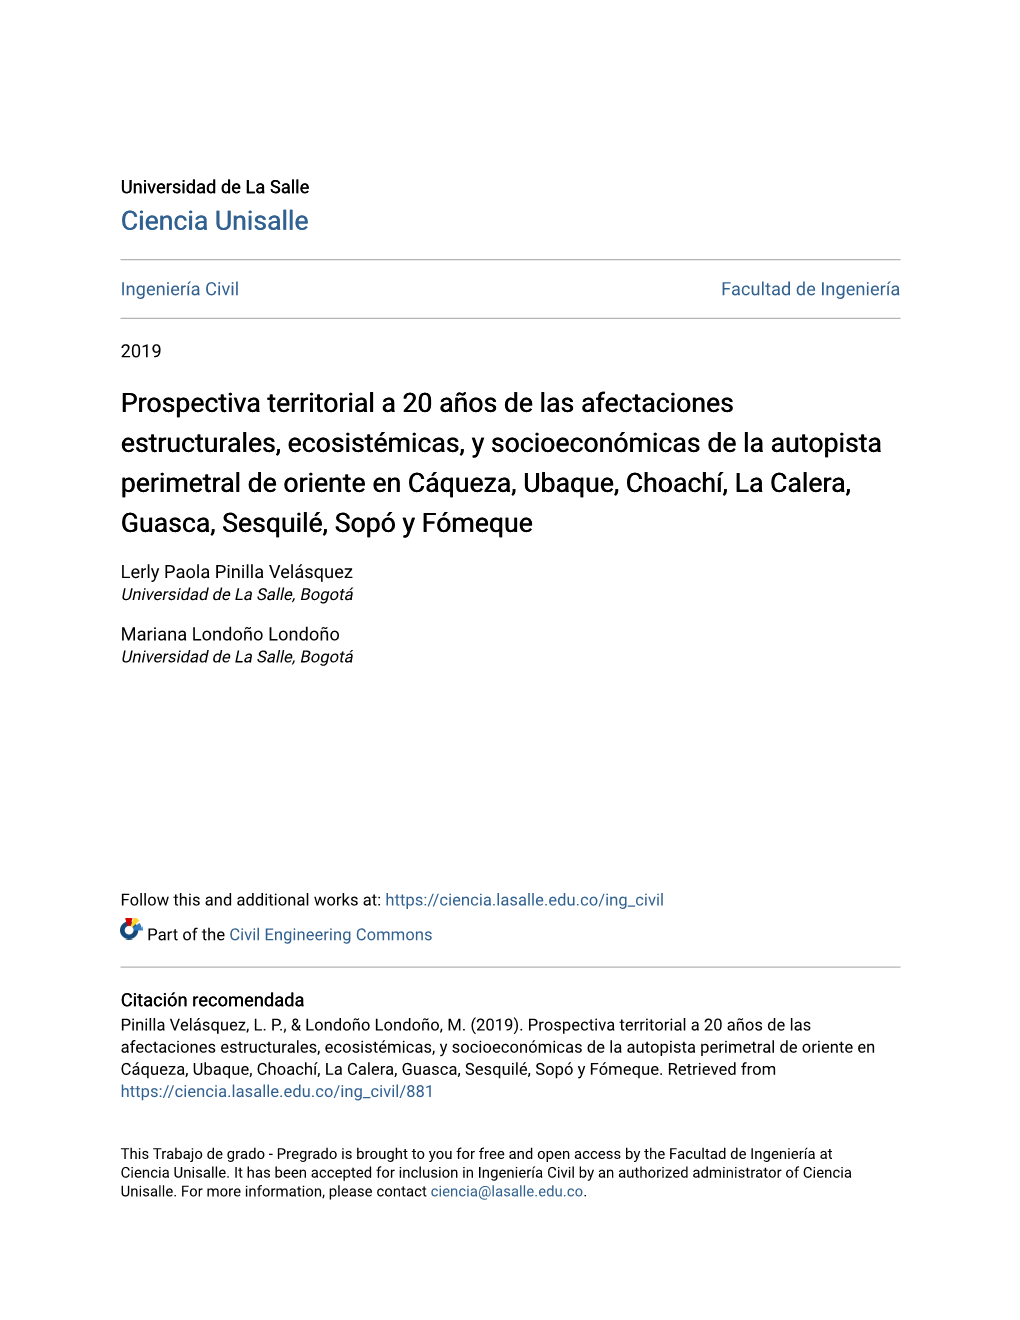 Prospectiva Territorial a 20 Años De Las Afectaciones Estructurales, Ecosistémicas, Y Socioeconómicas De La Autopista Perimet